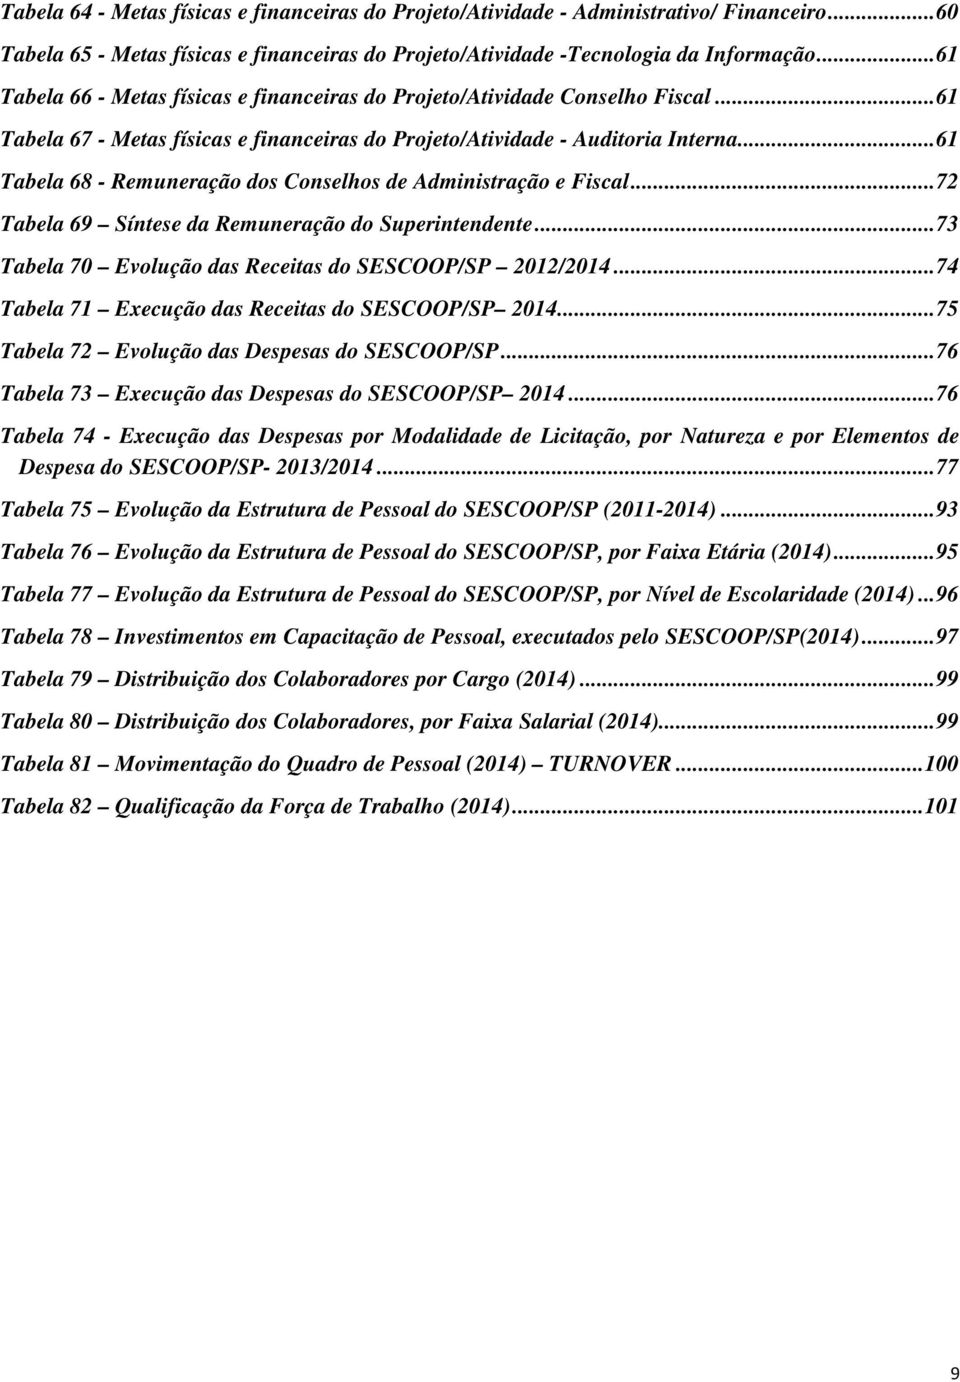 .. 61 Tabela 68 - Remuneração dos Conselhos de Administração e Fiscal... 72 Tabela 69 Síntese da Remuneração do Superintendente... 73 Tabela 70 Evolução das Receitas do SESCOOP/SP 2012/2014.